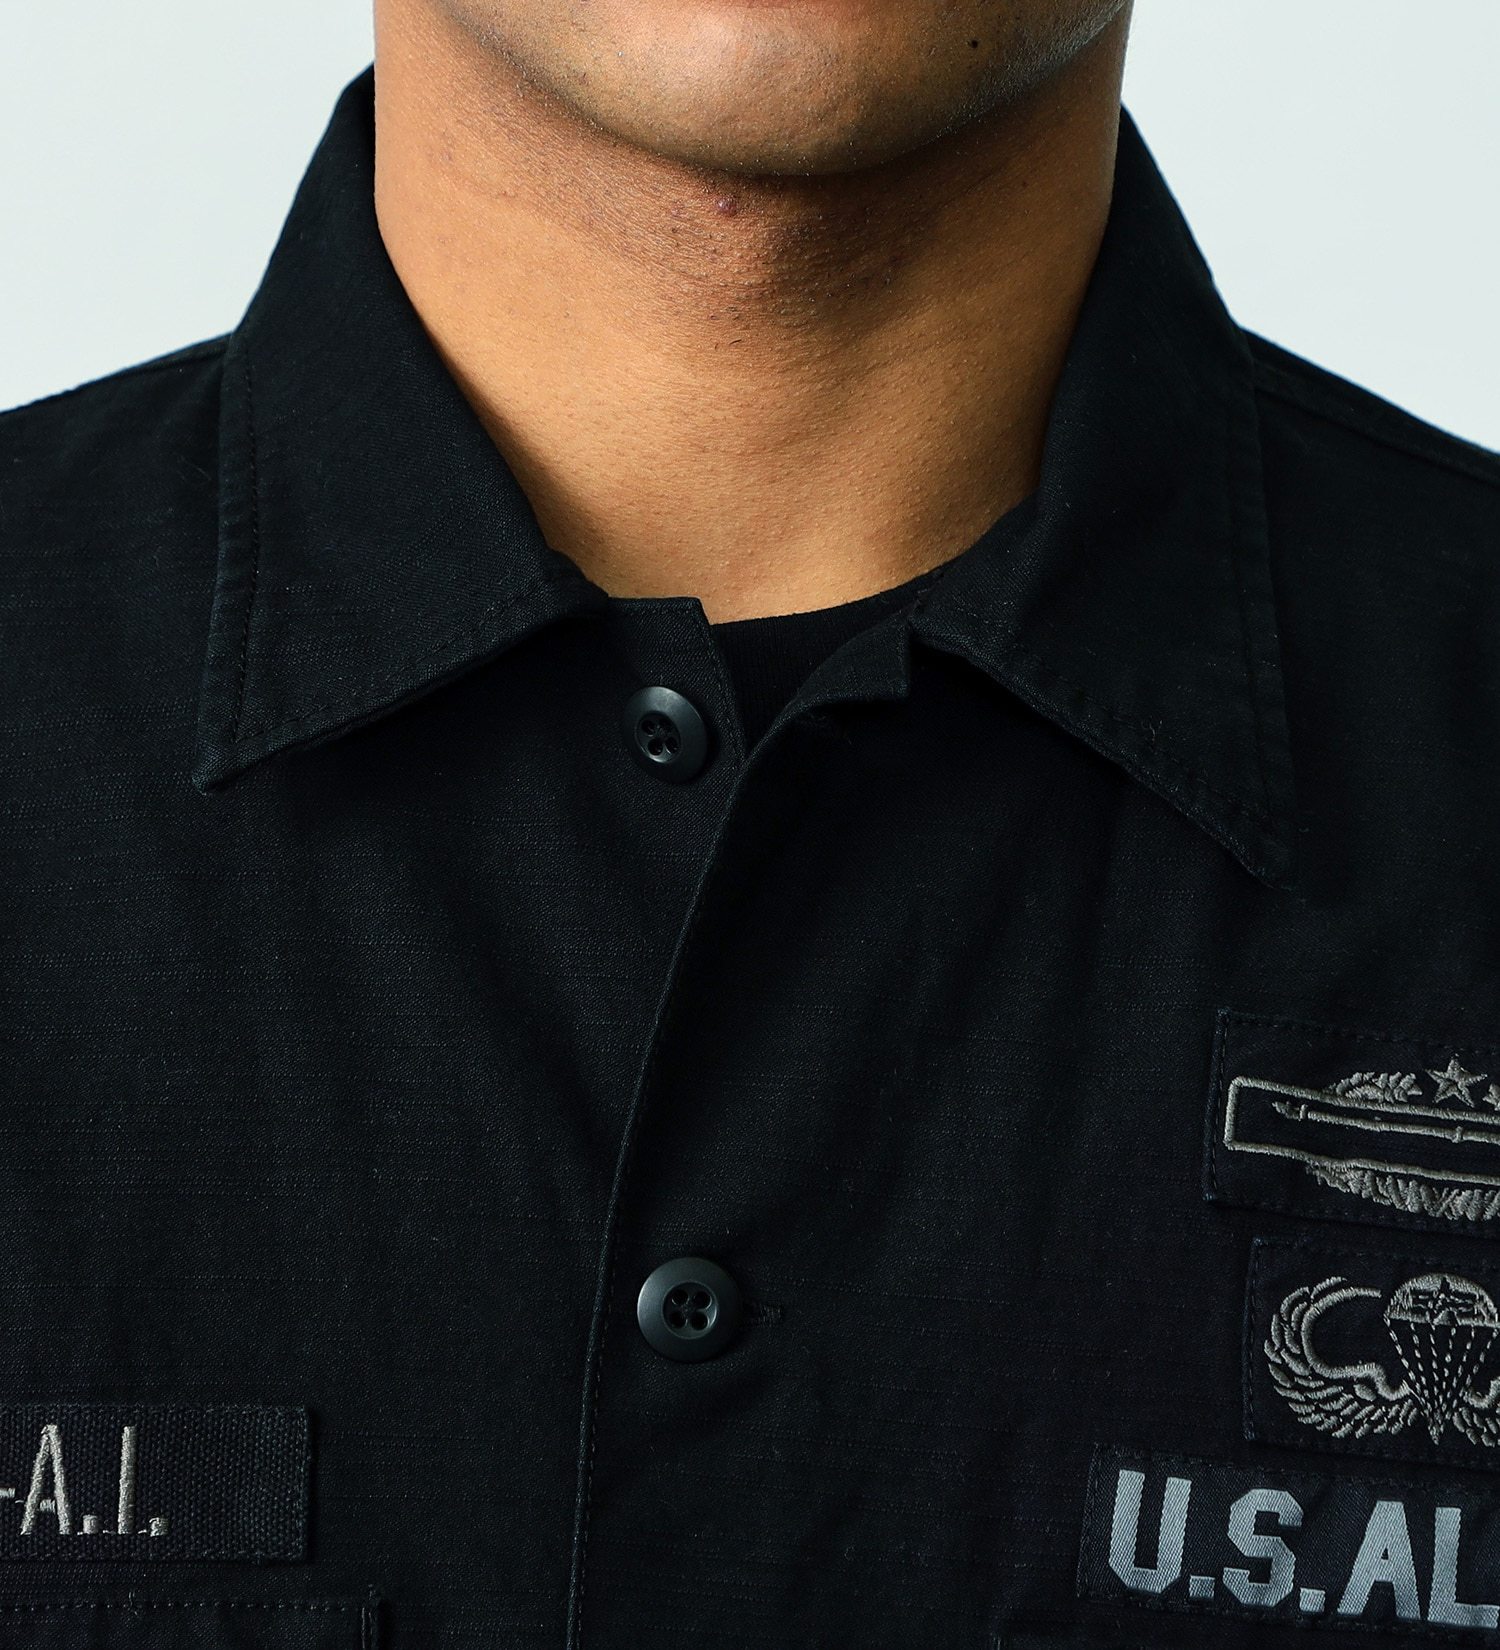 ALPHA(アルファ)のユーティリティーシャツ 半袖(ARMY PATCH)|トップス/シャツ/ブラウス/メンズ|ブラック